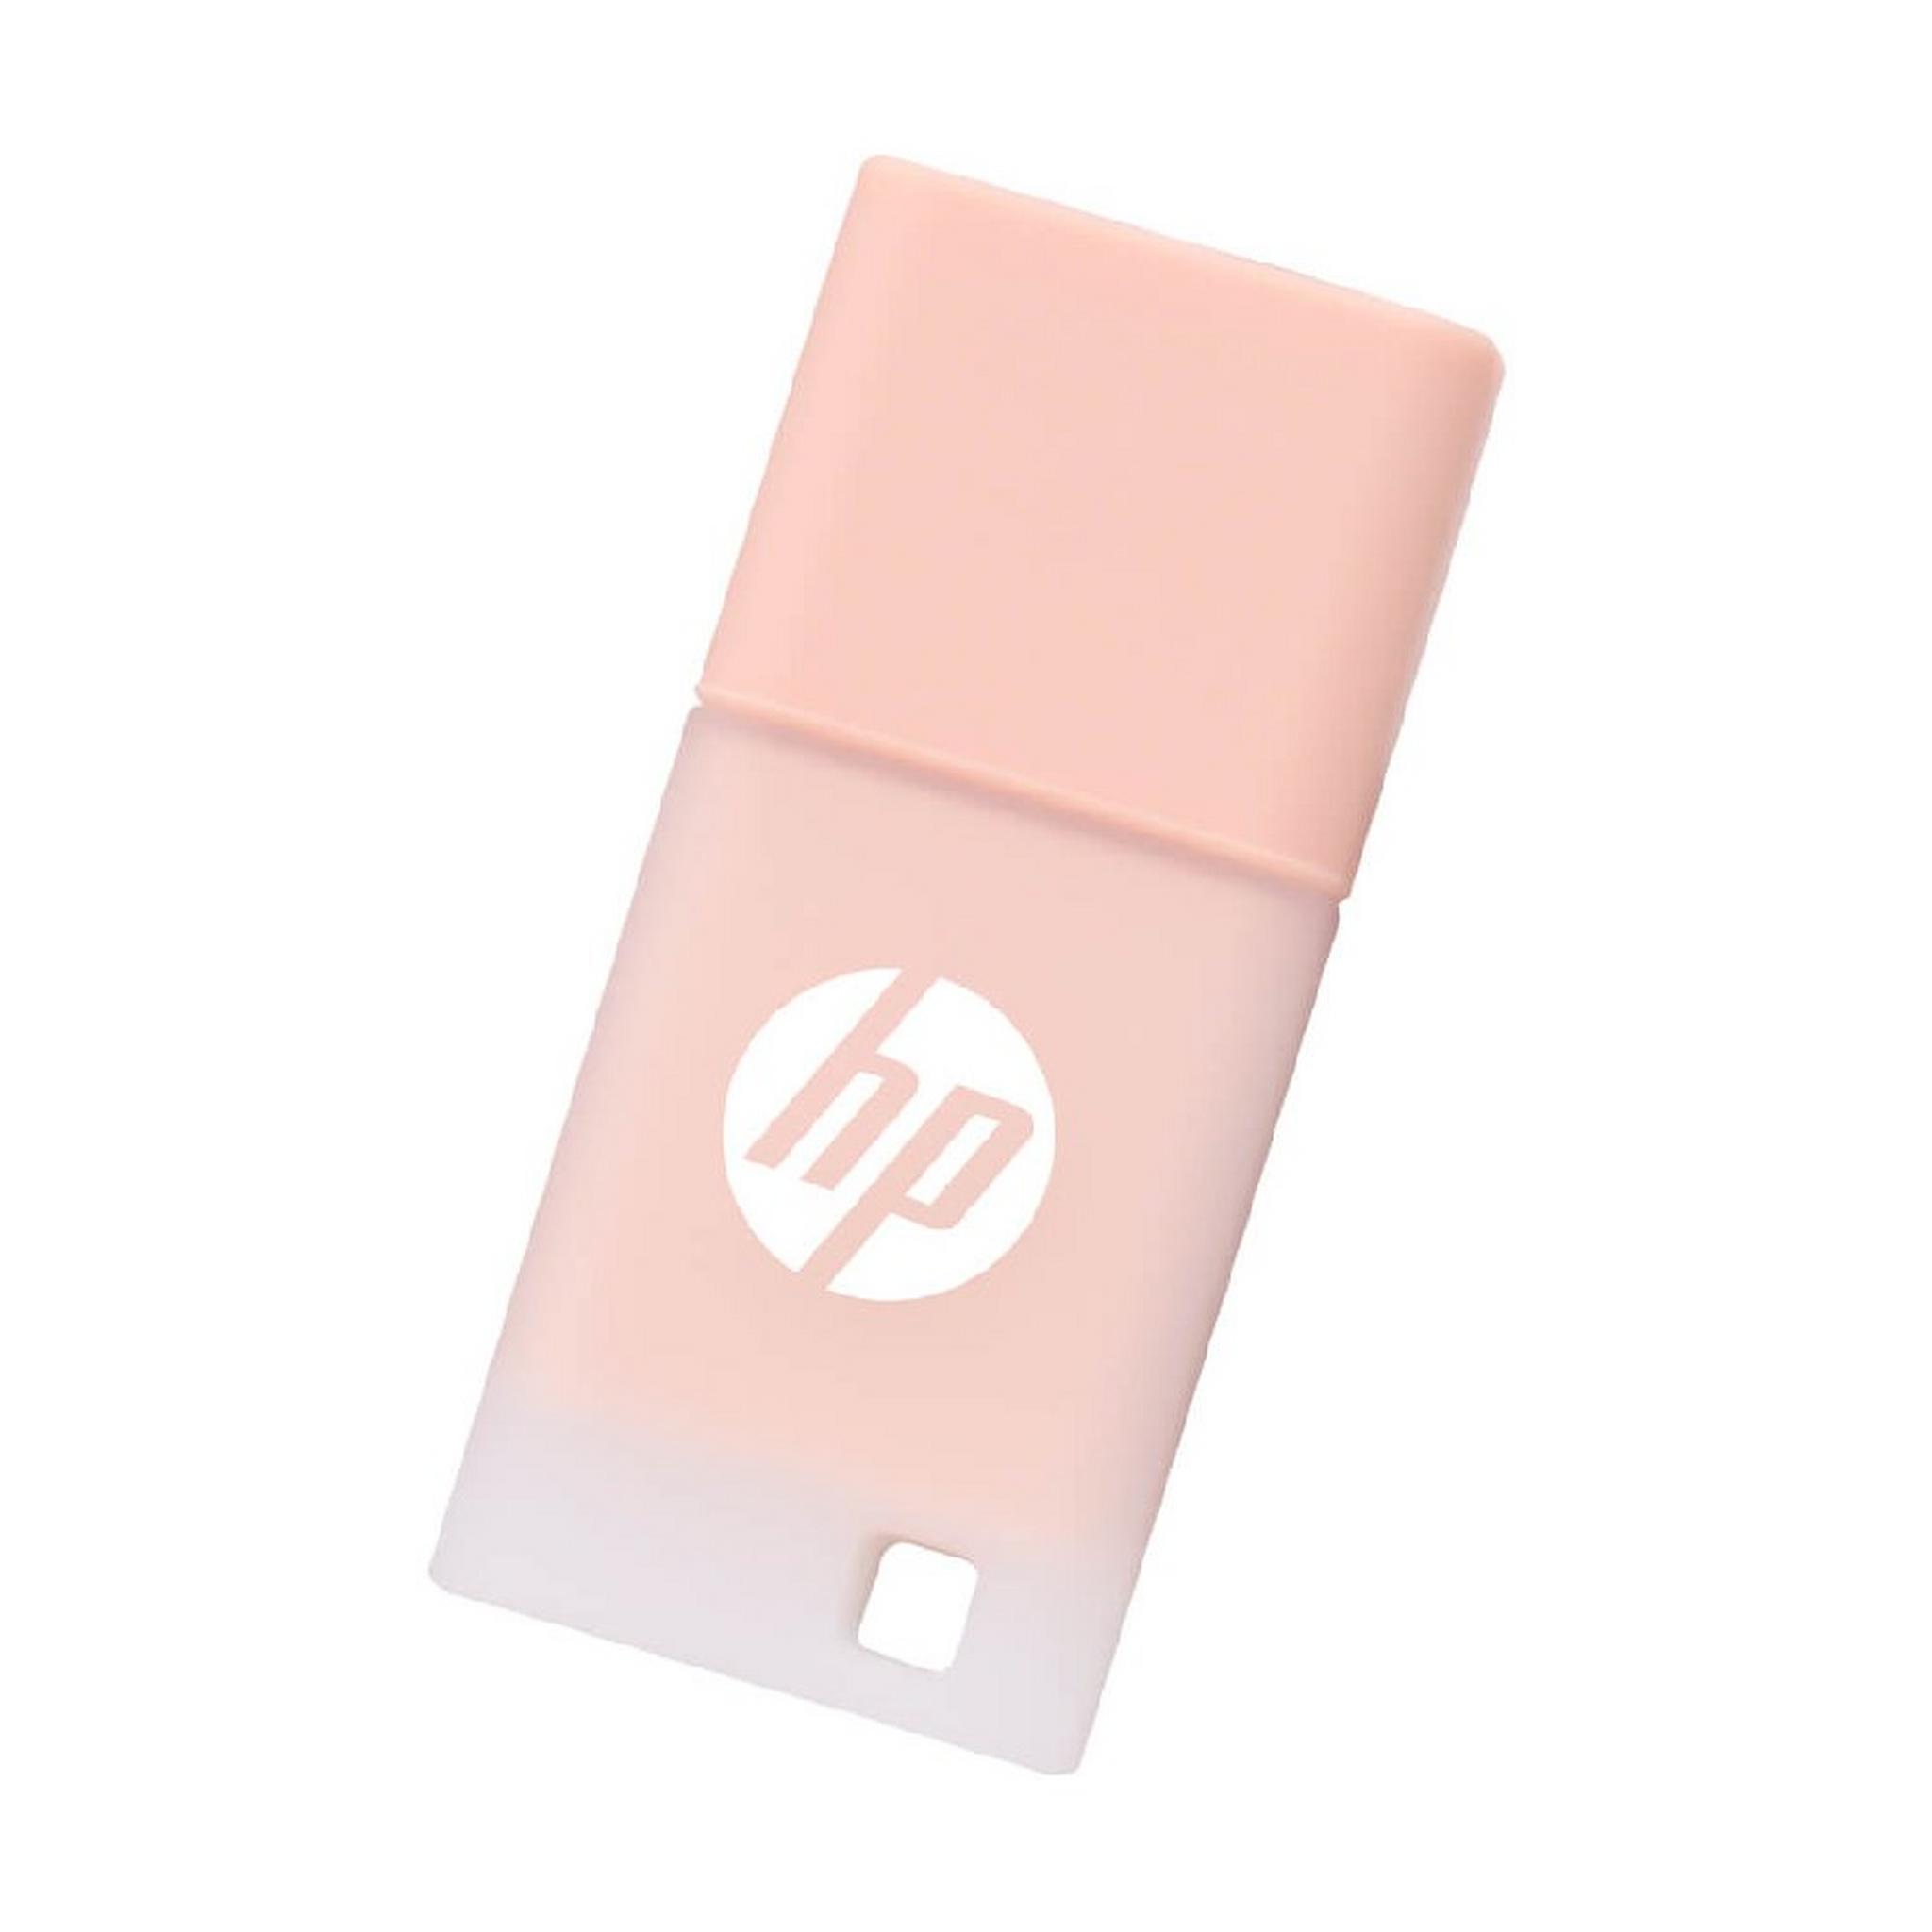 HP x768 USB 3.2 Flash Drive, 128 GB, HPFD768K-128 - Beige Rose